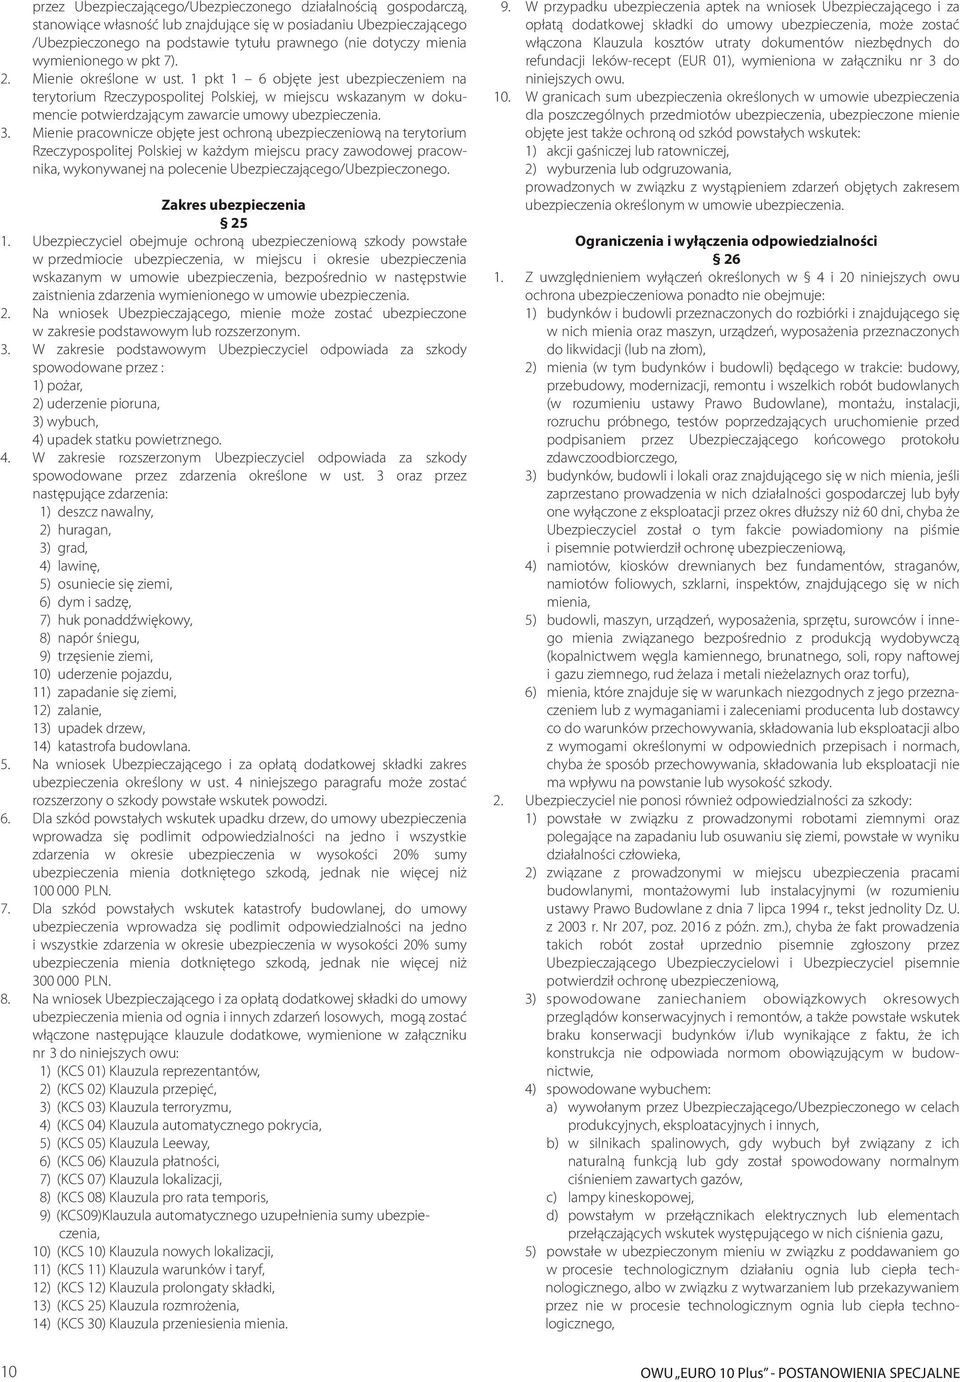 1 pkt 1 6 objęte jest ubezpieczeniem na terytorium Rzeczypospolitej Polskiej, w miejscu wskazanym w dokumencie potwierdzającym zawarcie umowy ubezpieczenia. 3.